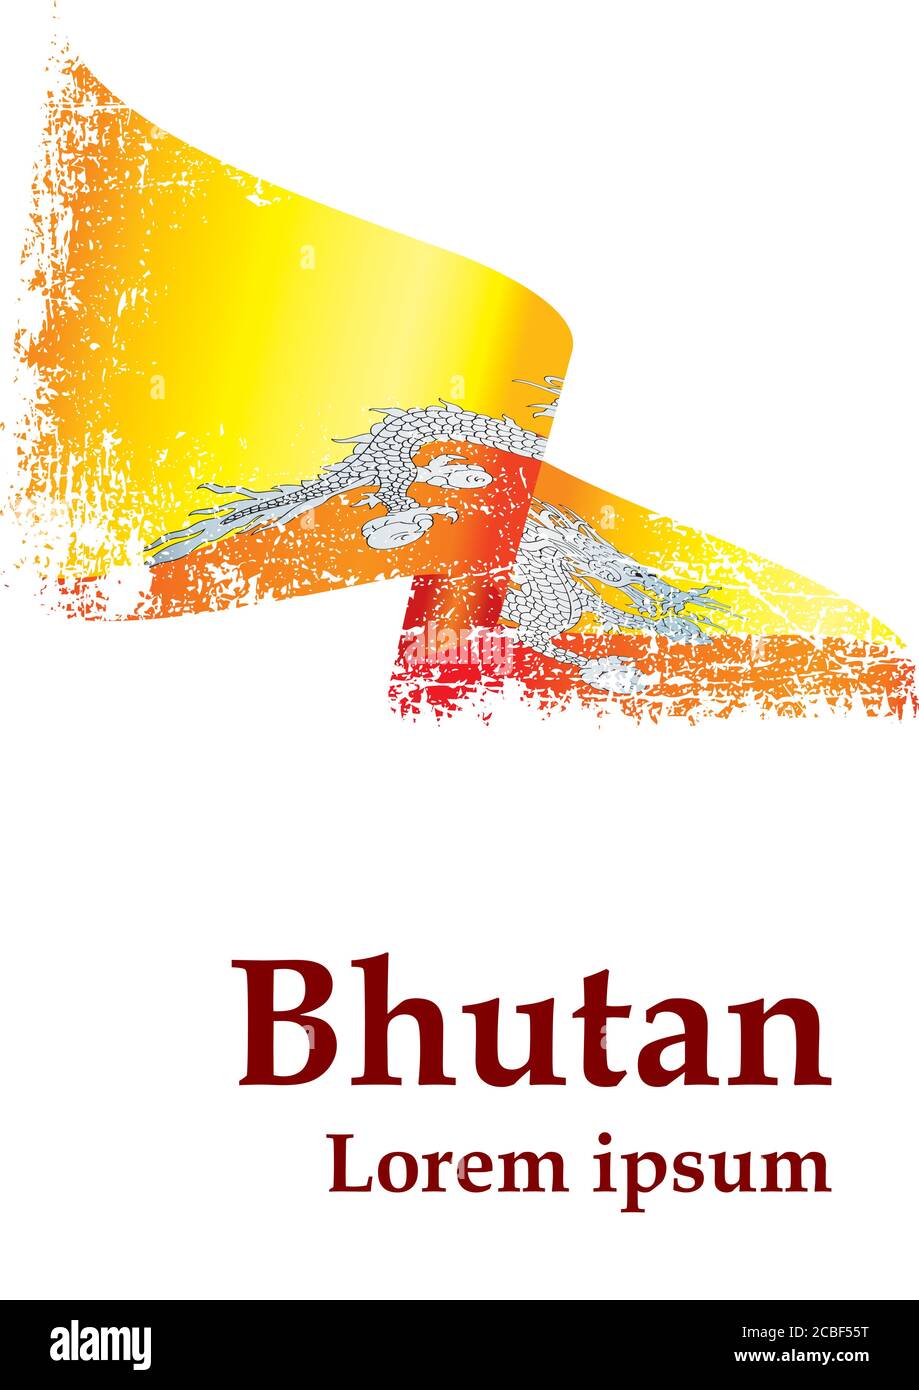 Drapeau du Bhoutan, Royaume du Bhoutan. Modèle pour la conception des prix, un document officiel avec le drapeau du Bhoutan. Illustration de Vecteur